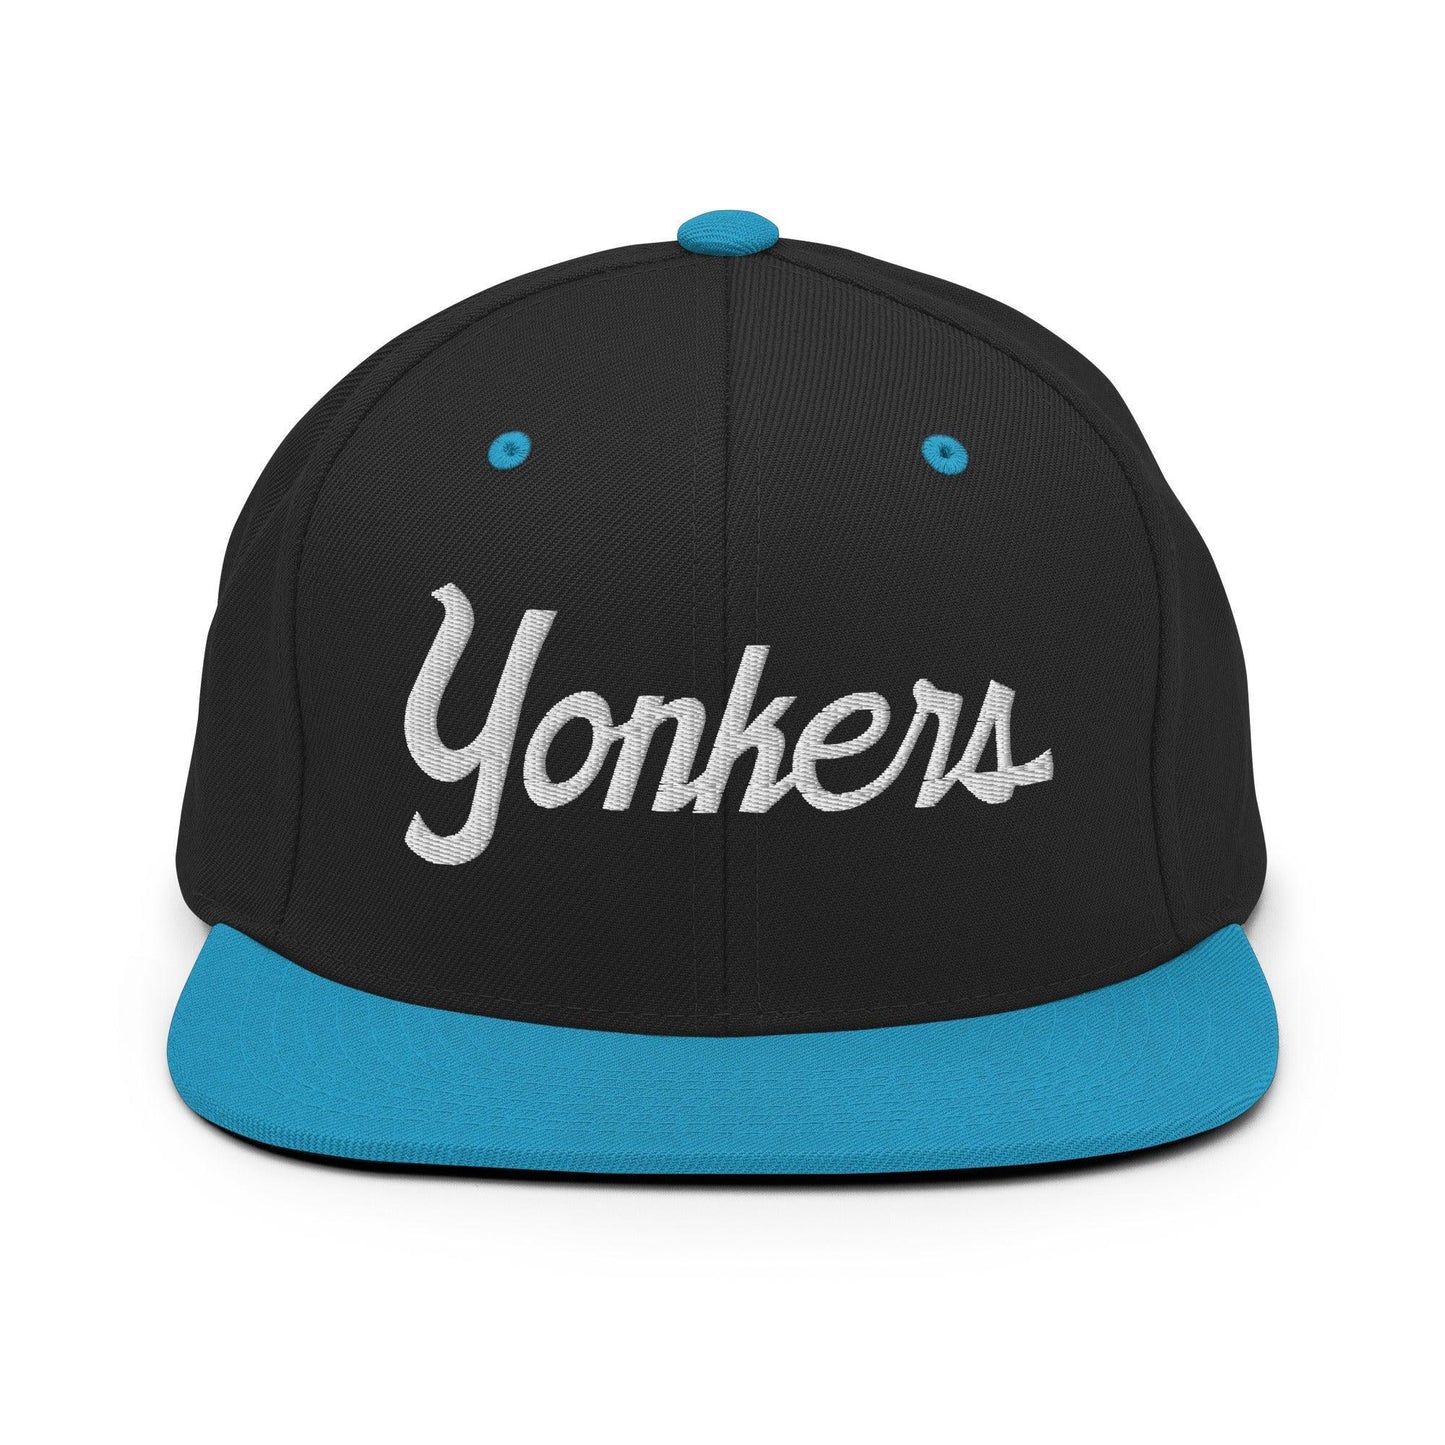 Yonkers Script Snapback Hat Black Teal